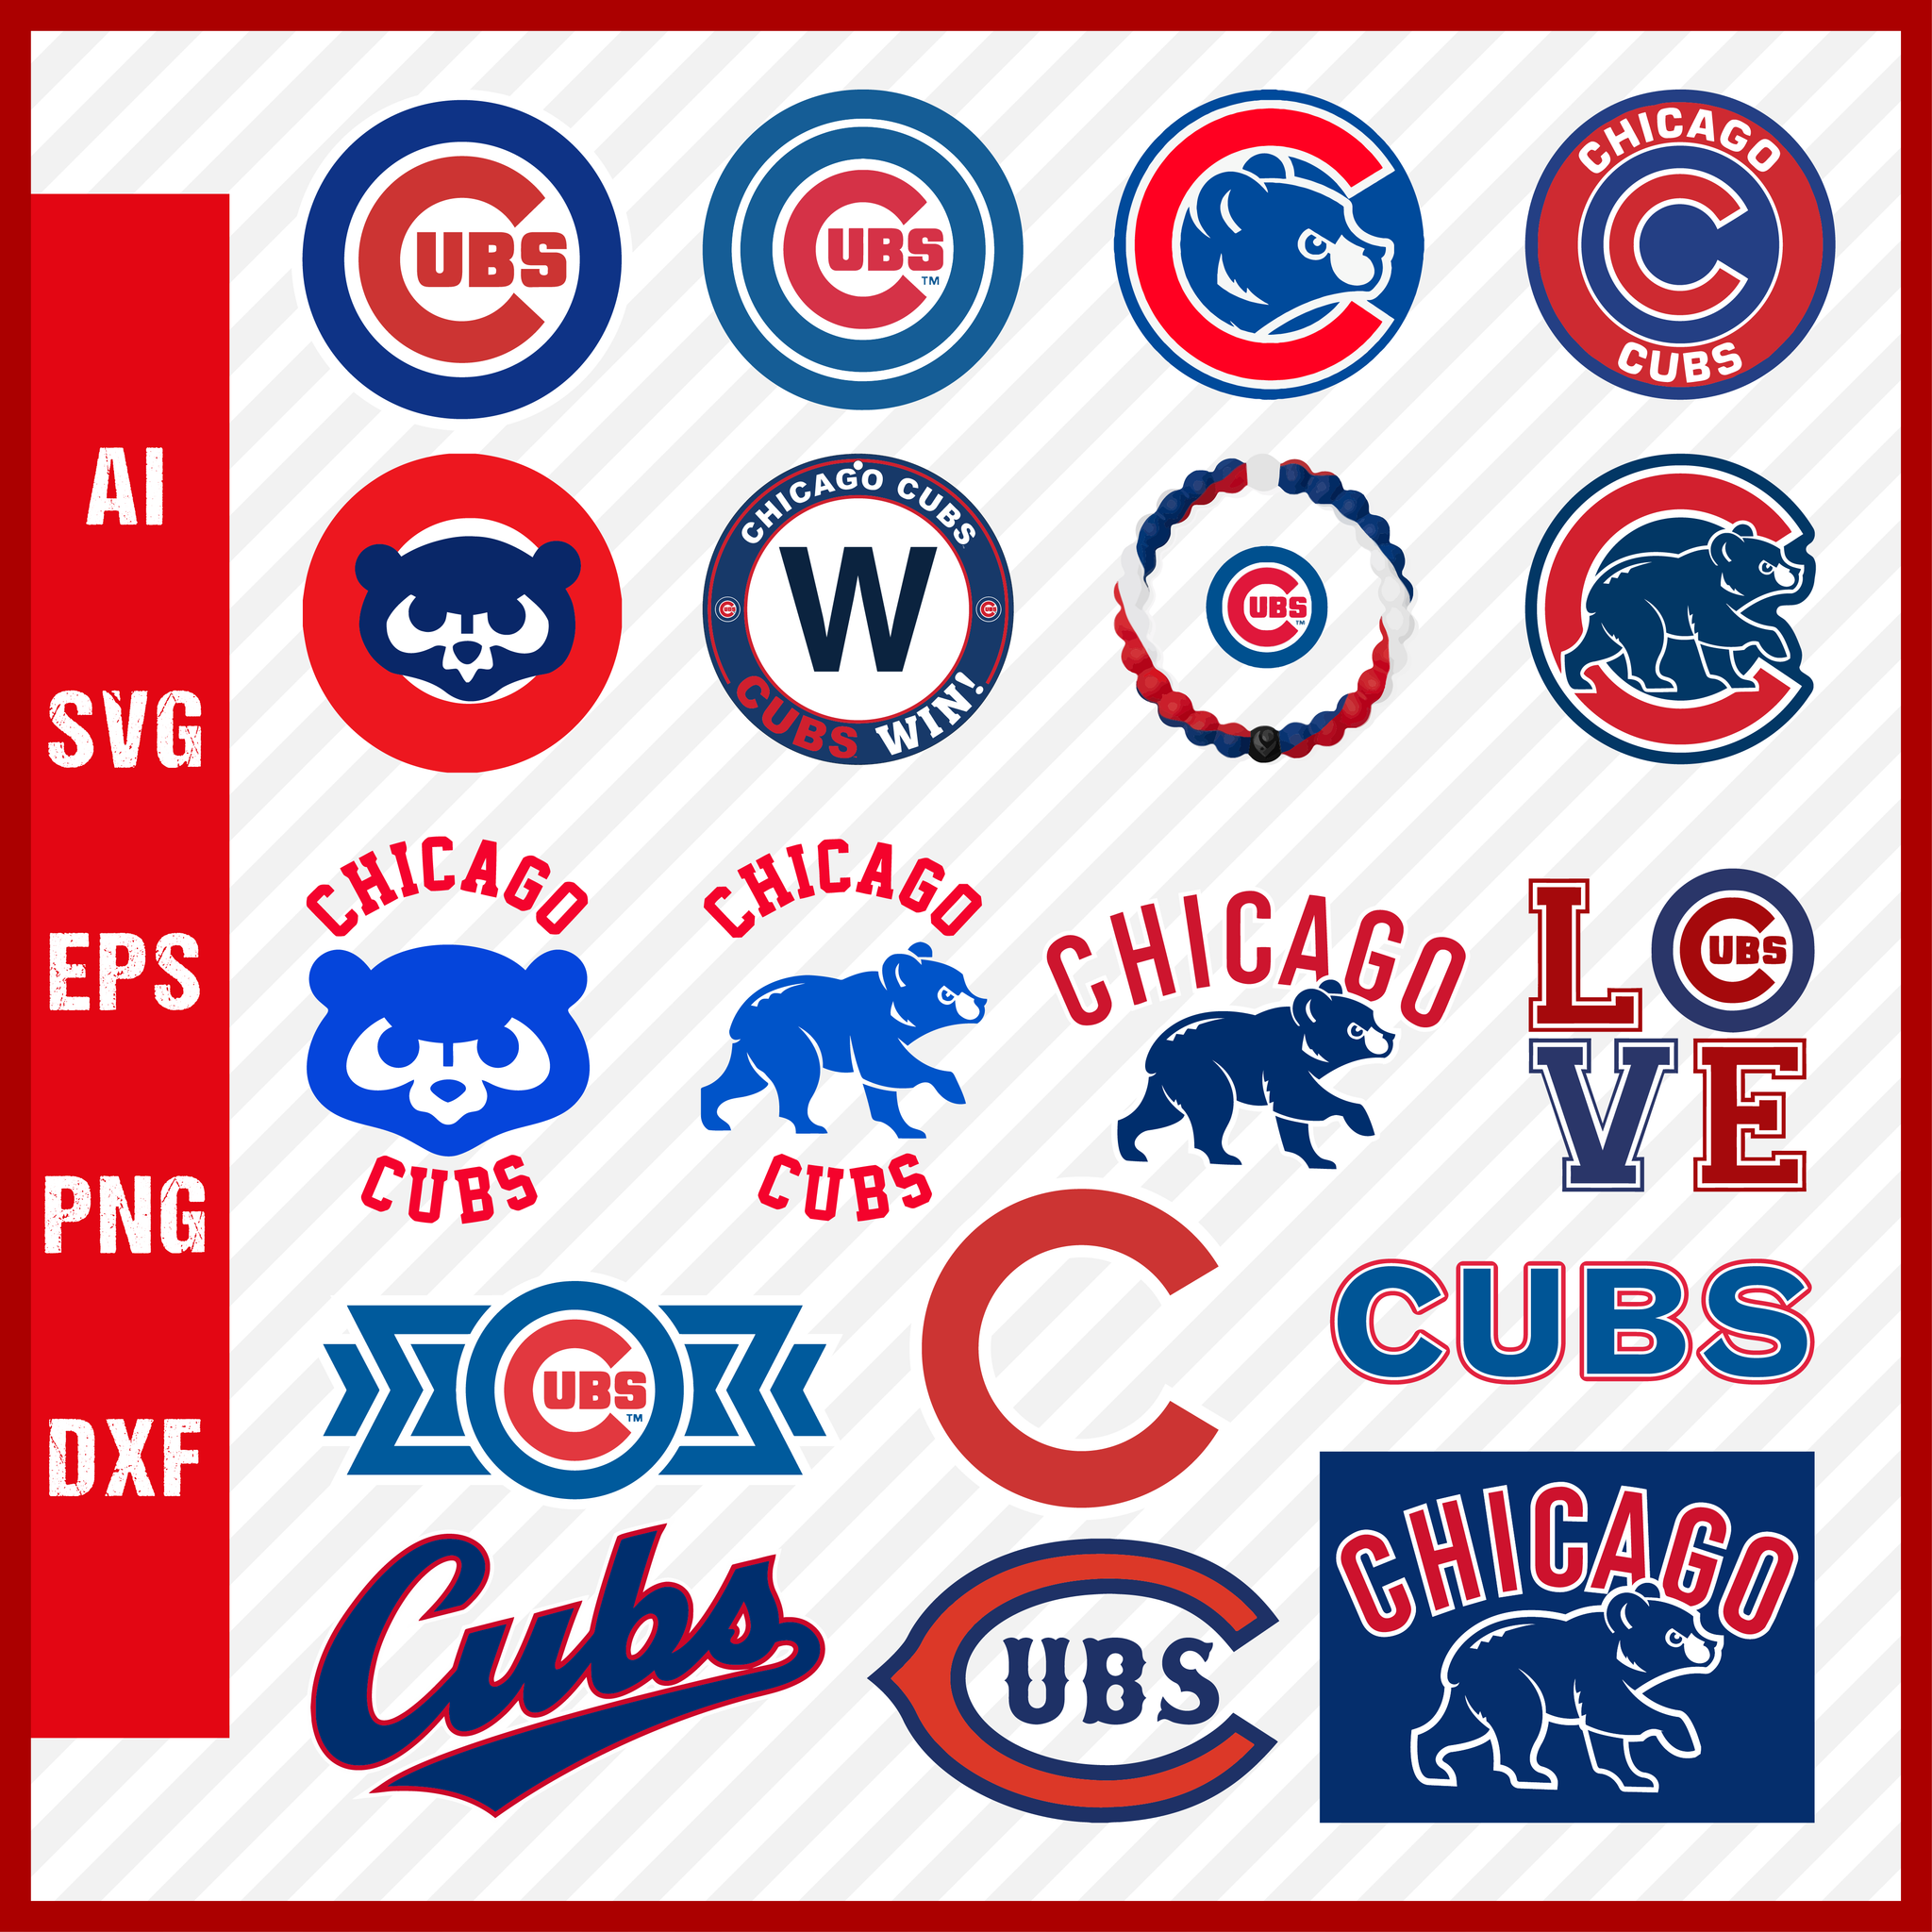 CHICAGO CUBS LOGO SVG FILE BUNDLE  MLB Chicago Cubs